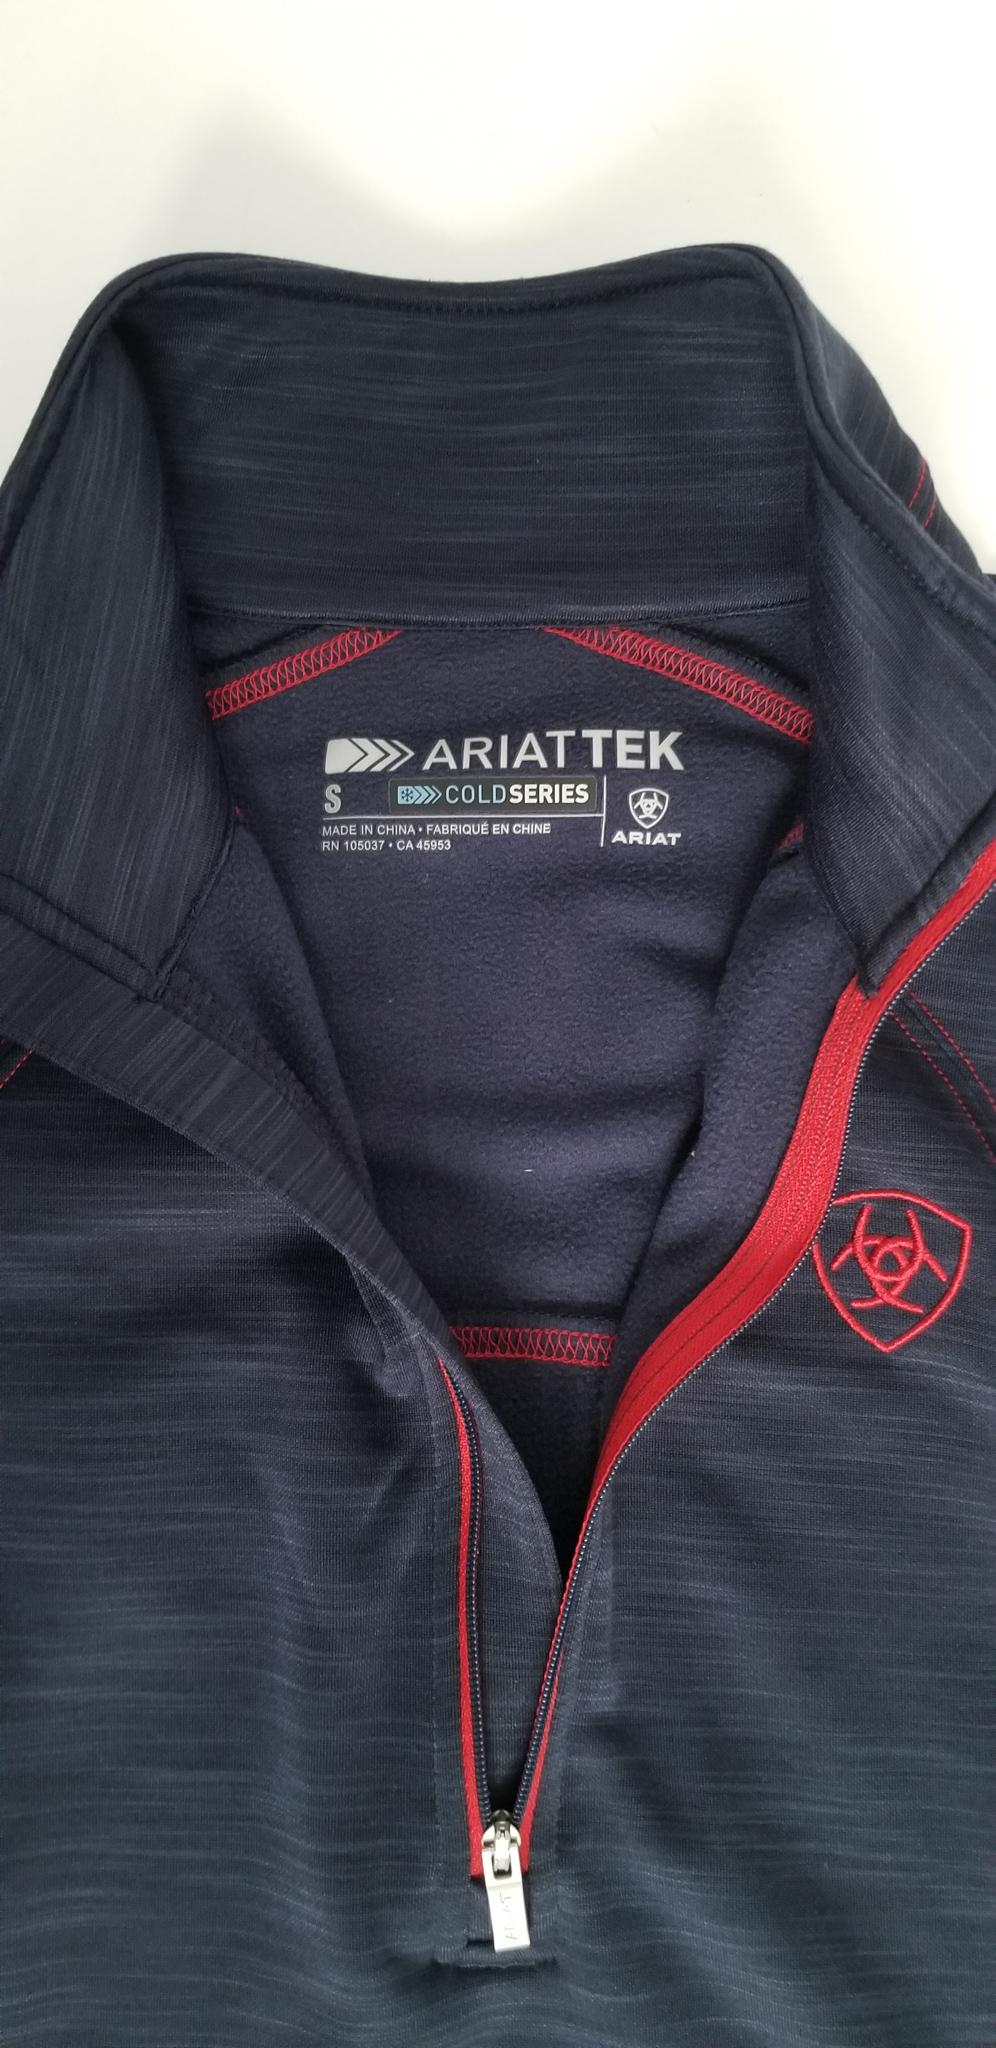 Ariat Women's Tek Team Half Zip Sweatshirt - Navy - Women's Small